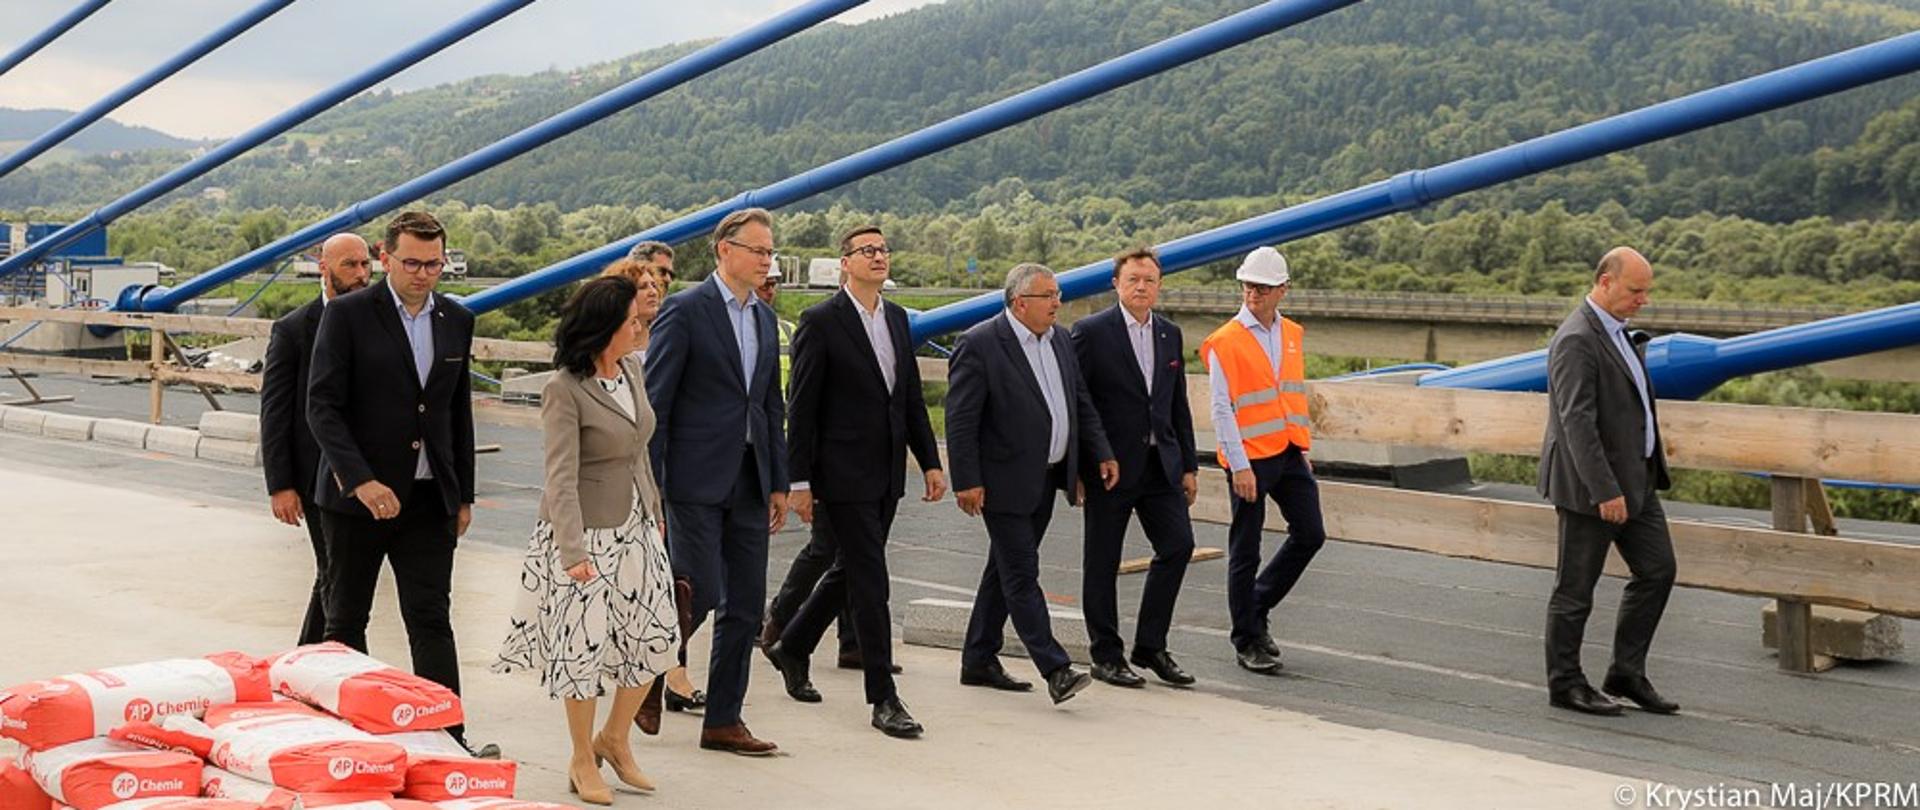 Premier z ministrem infrastruktury i samorządowcami zwiedzają teren budowy mostu.